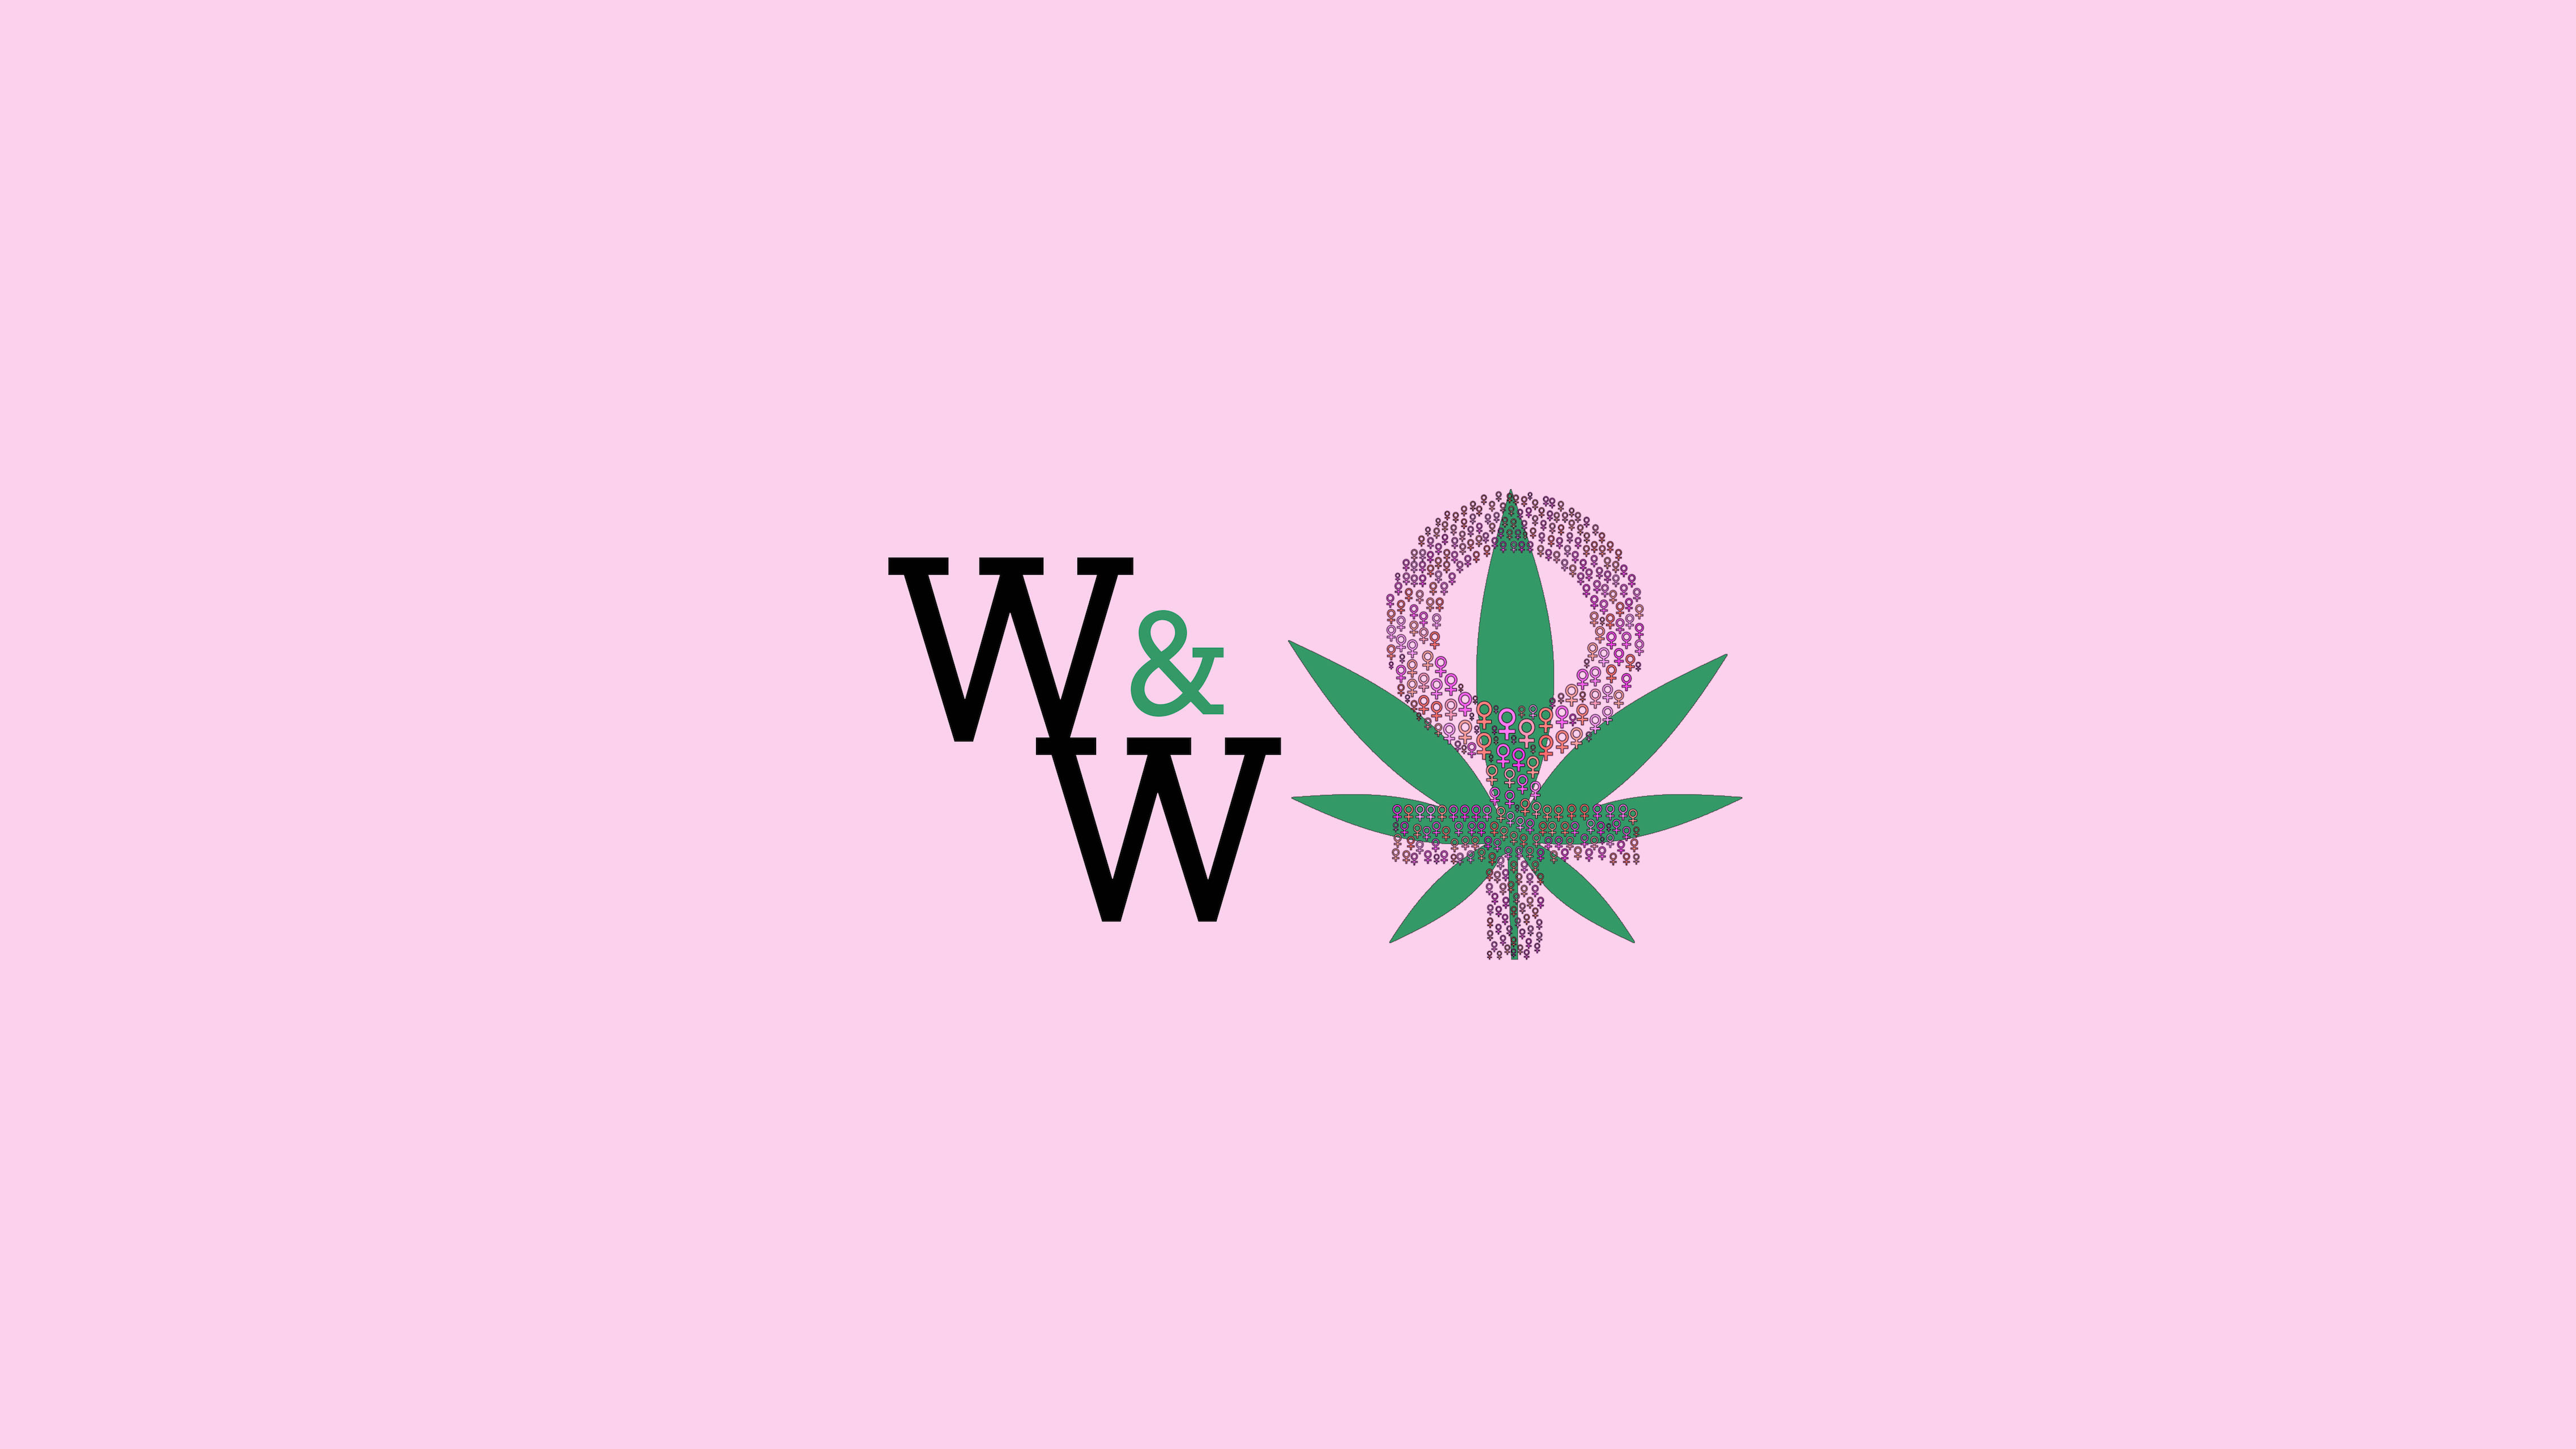 Women & Weed